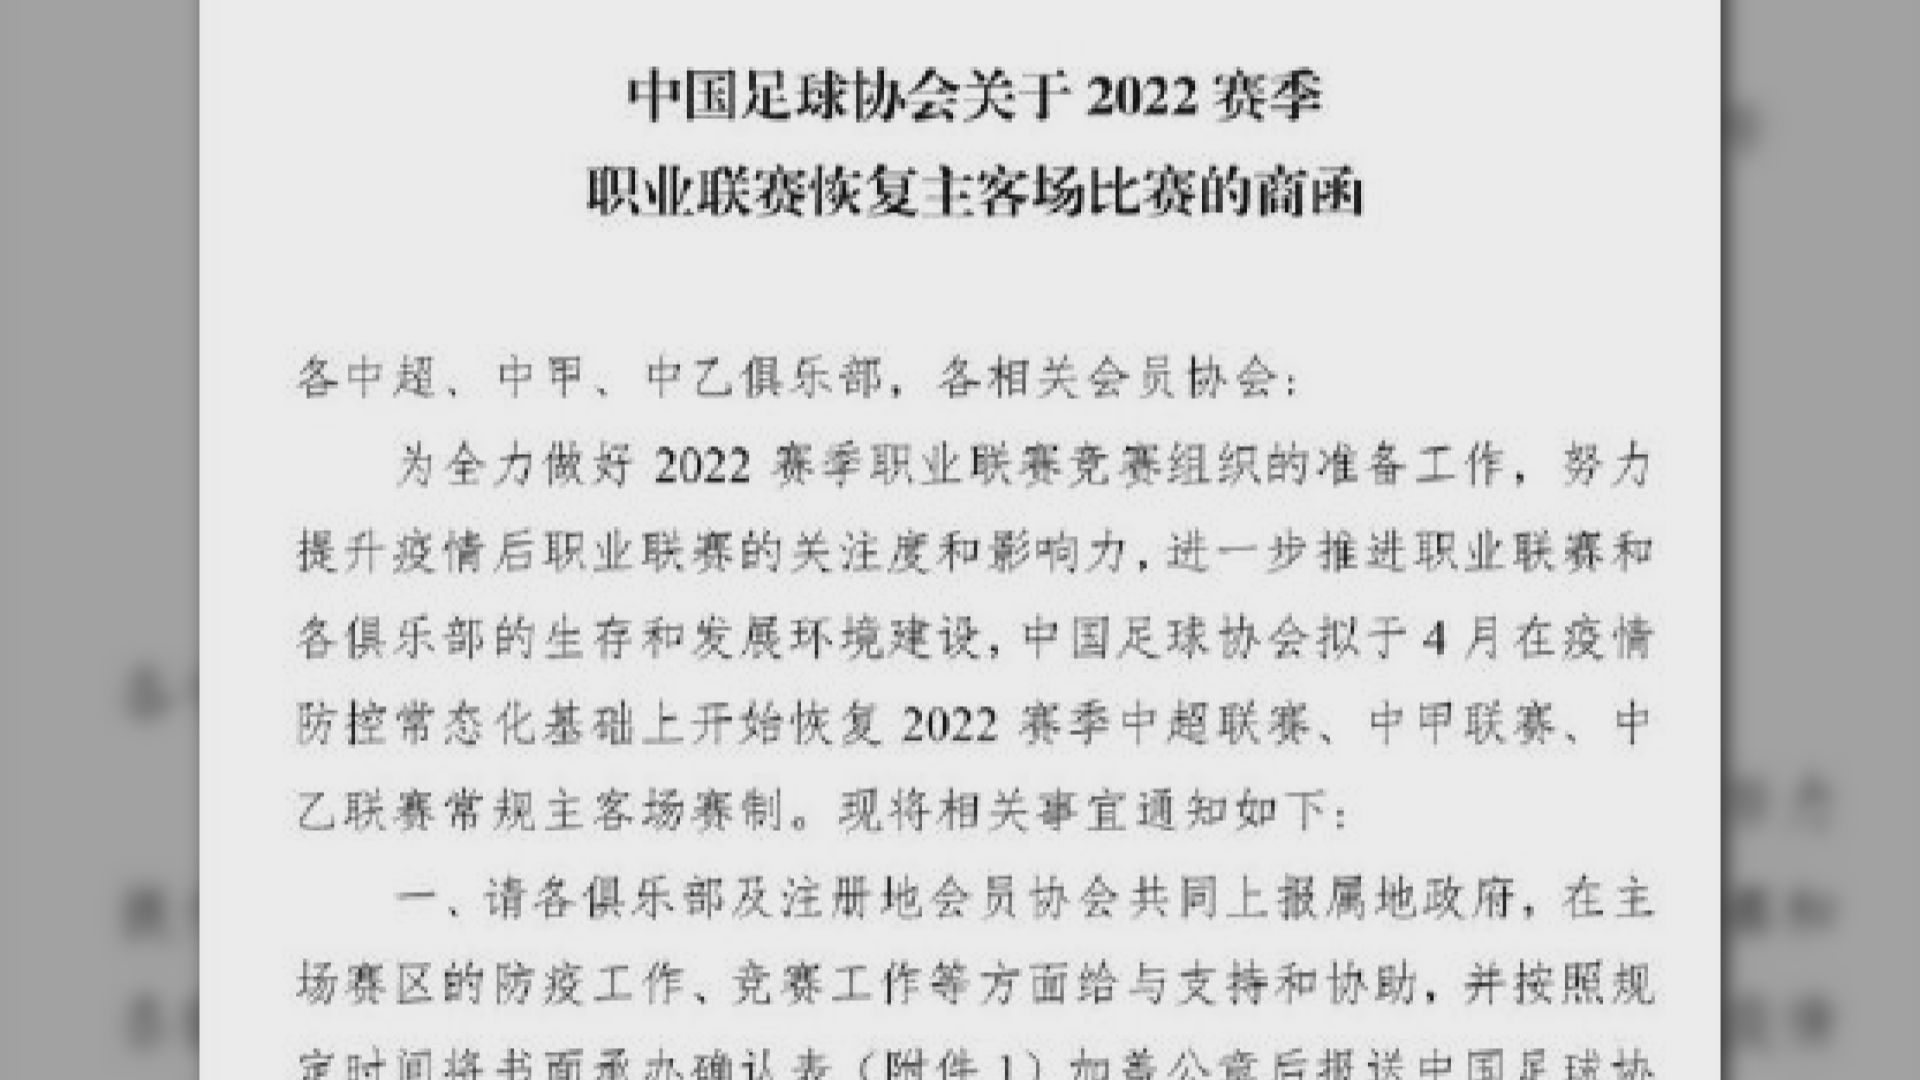 內地傳媒指中國足協擬於2022年賽季恢復主客制